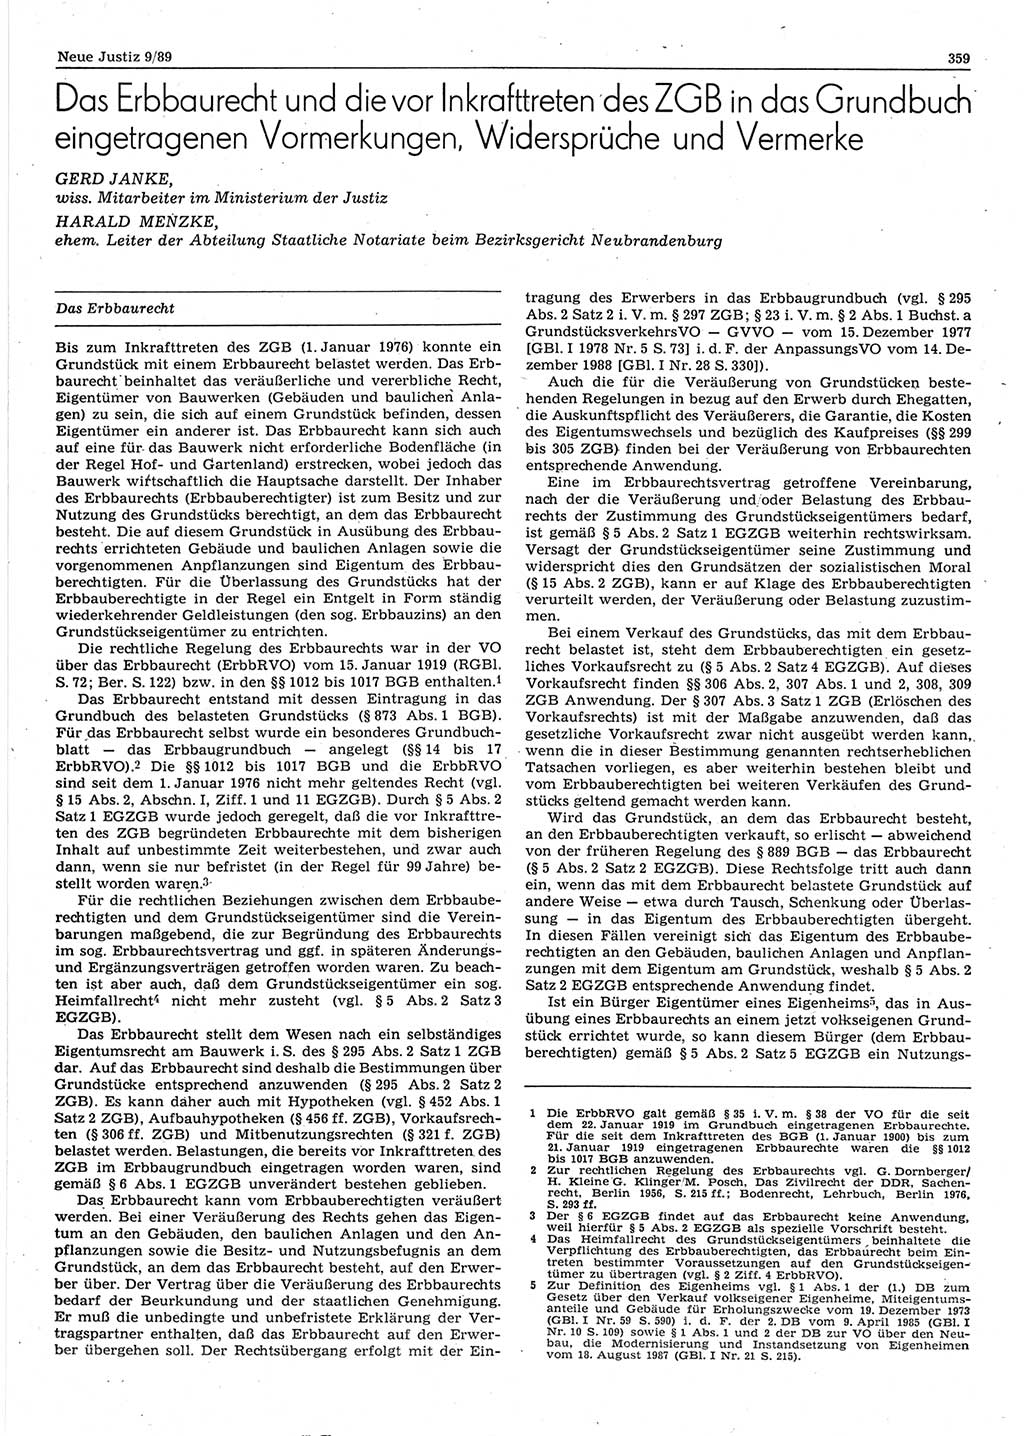 Neue Justiz (NJ), Zeitschrift für sozialistisches Recht und Gesetzlichkeit [Deutsche Demokratische Republik (DDR)], 43. Jahrgang 1989, Seite 359 (NJ DDR 1989, S. 359)